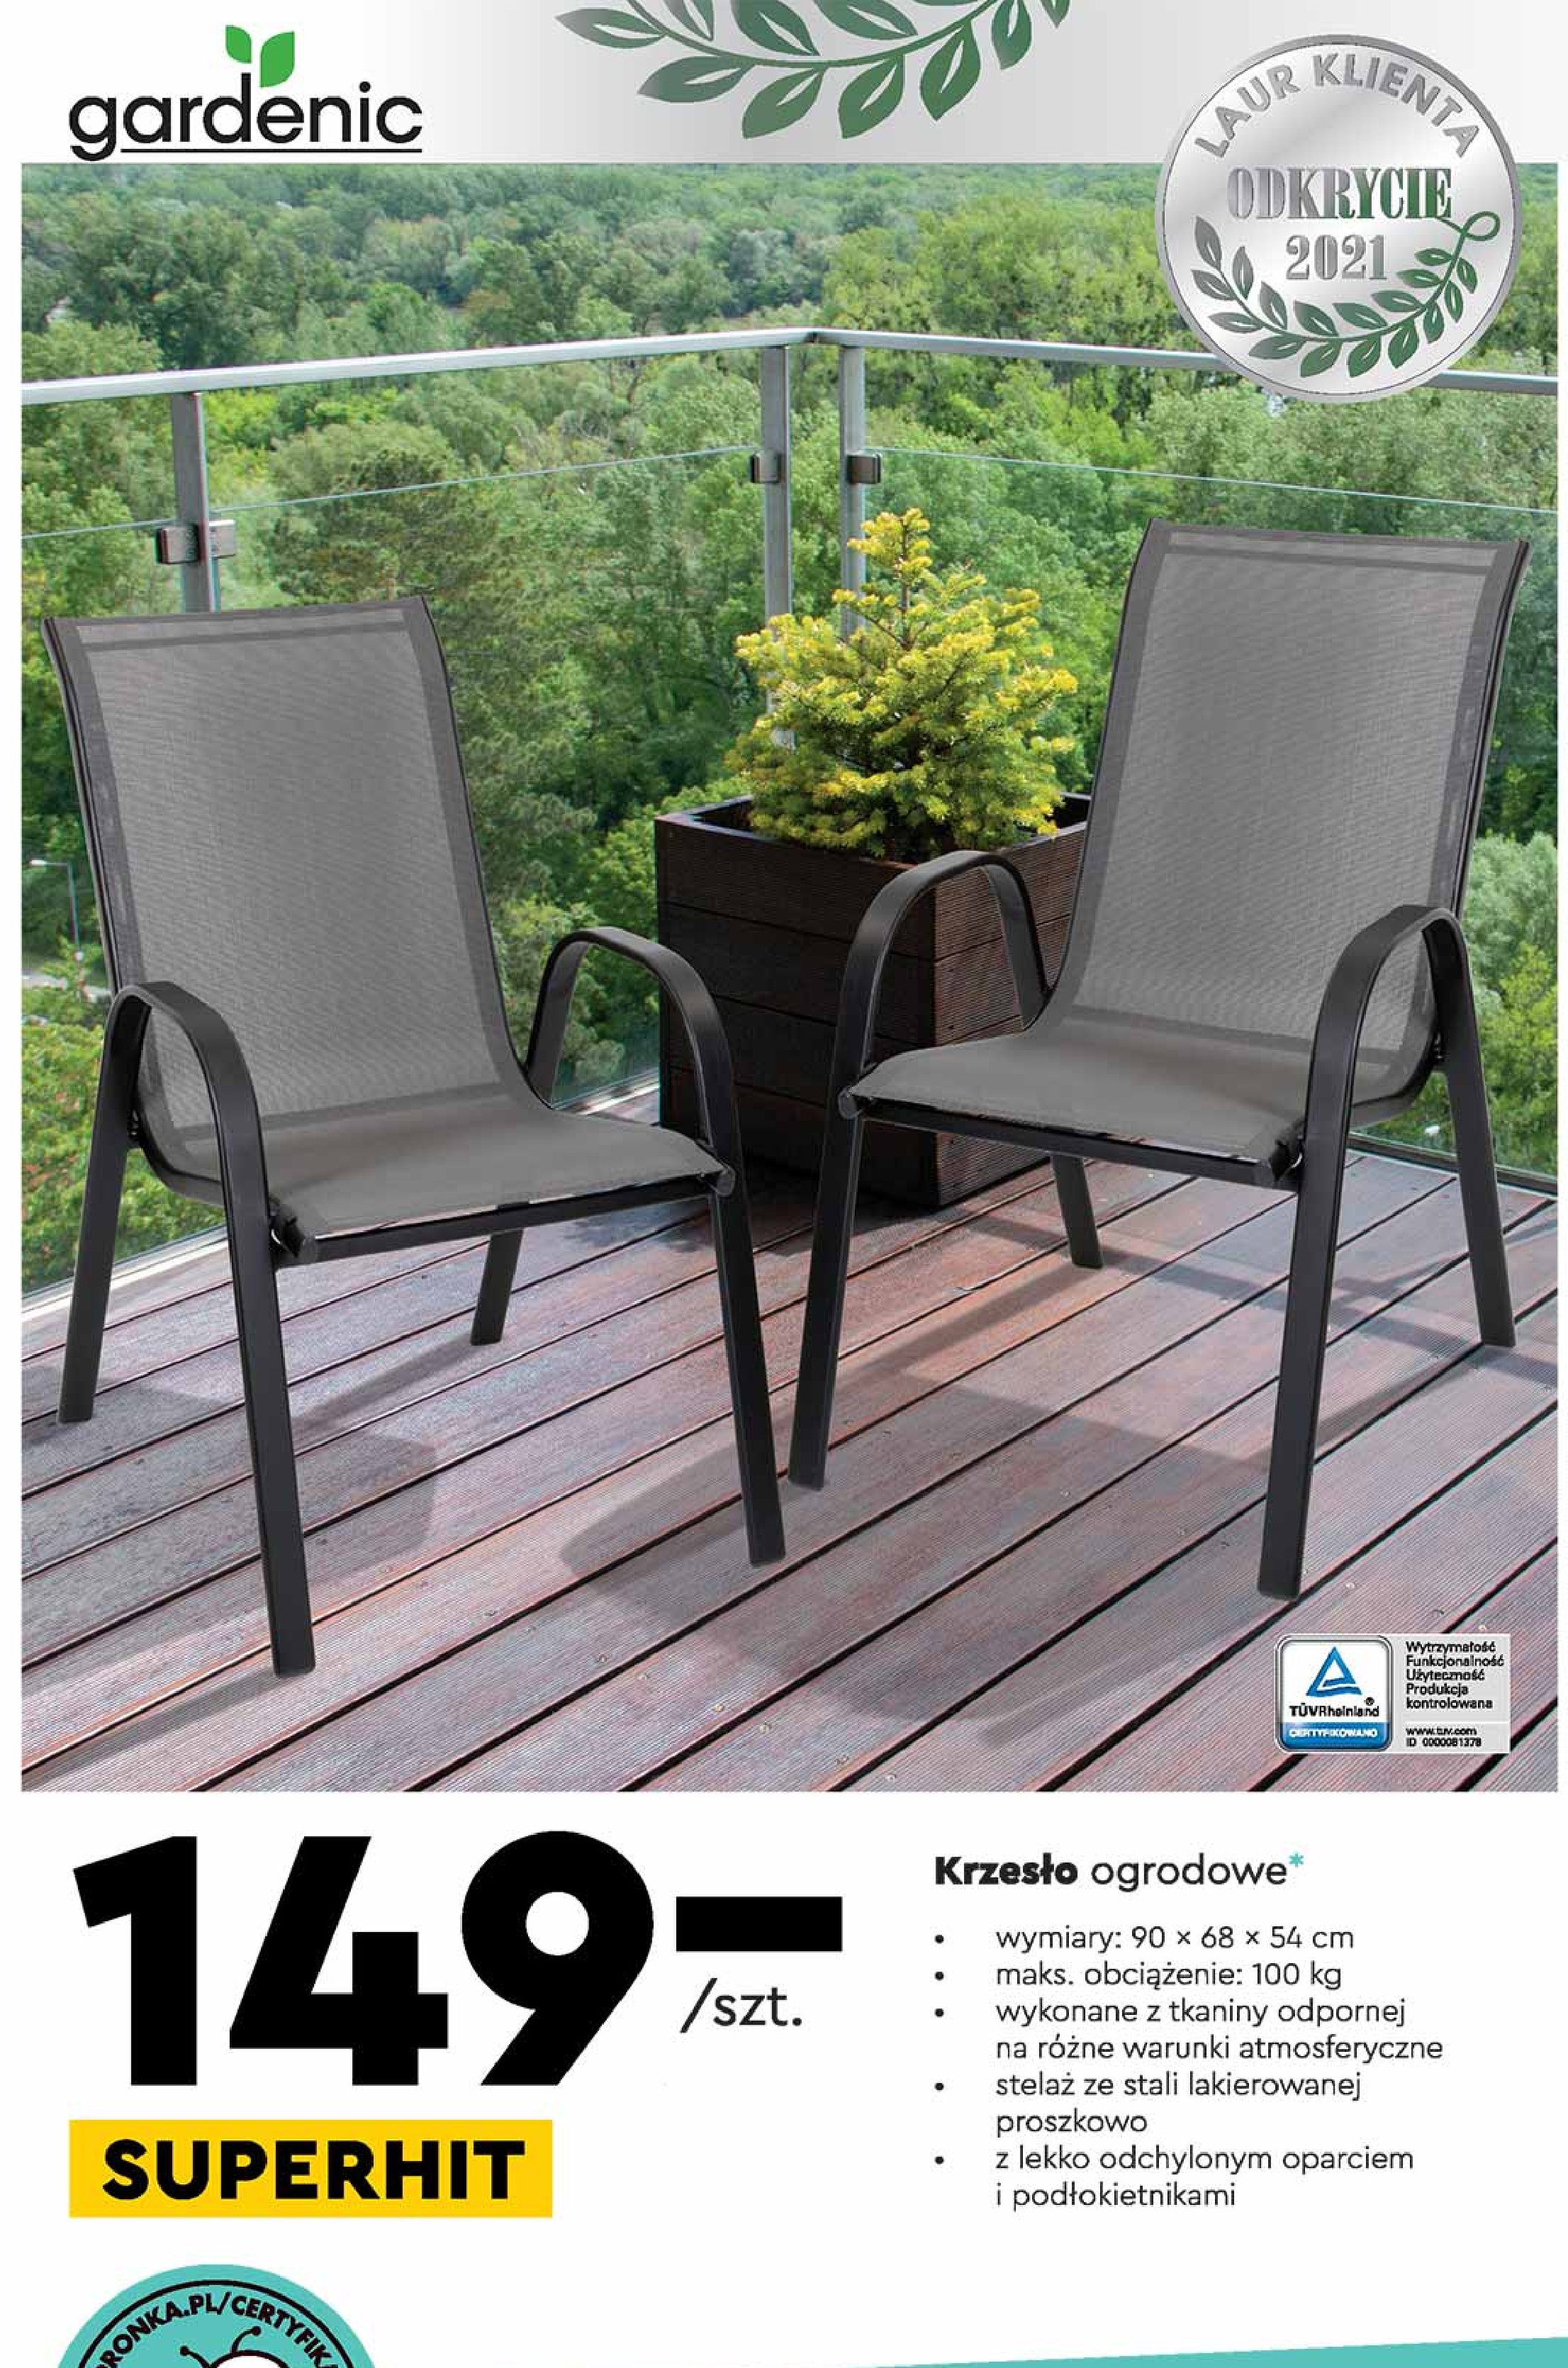 Krzesło ogrodowe 90 x 68 x 54 cm Gardenic promocje